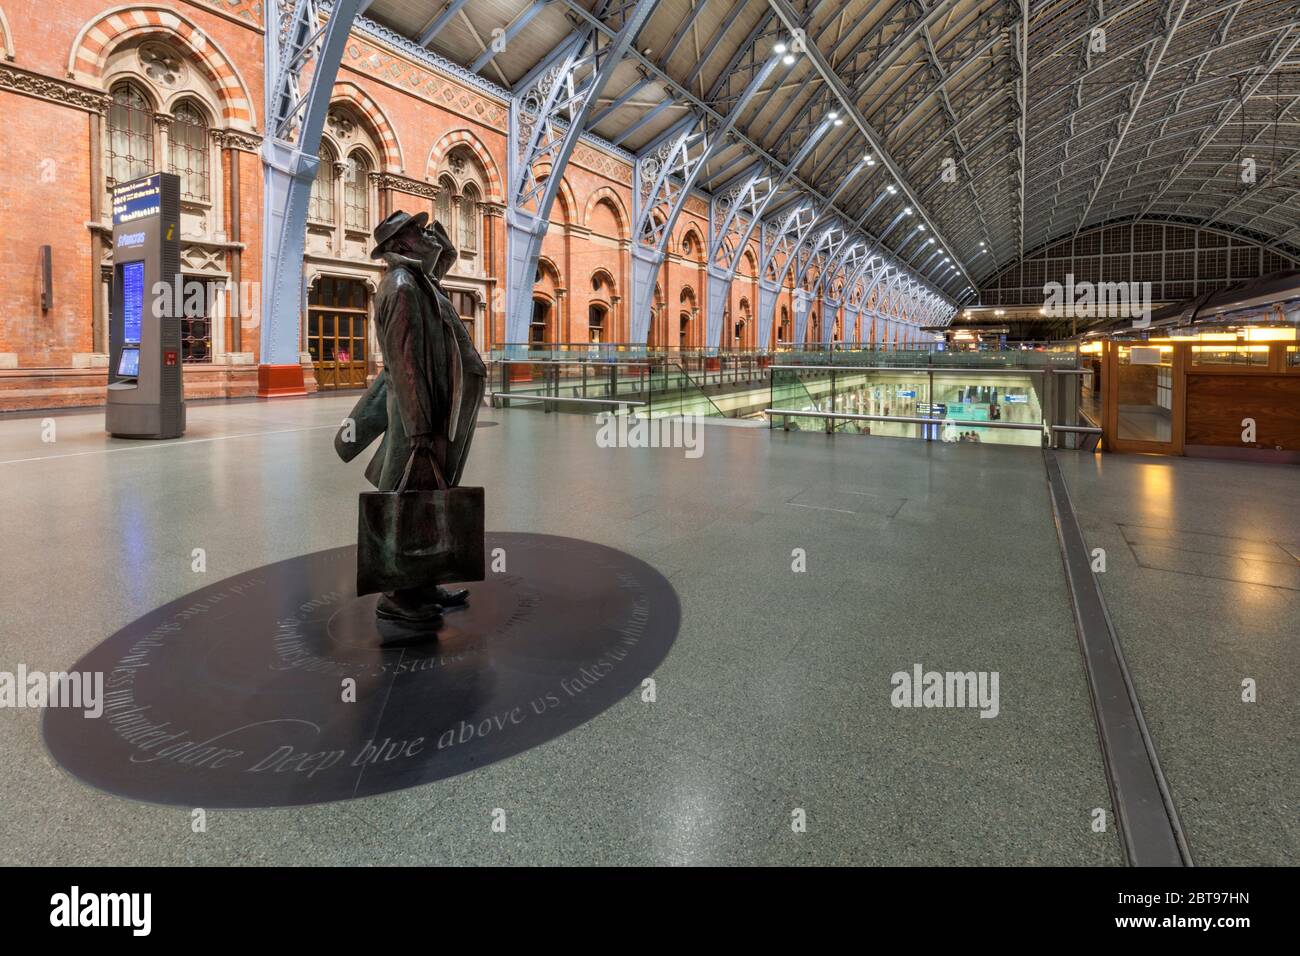 16/01/2019 Londra St Pancras stazione Statua di Sir John Betjeman, accreditato di salvare la stazione dalla demolizione Foto Stock